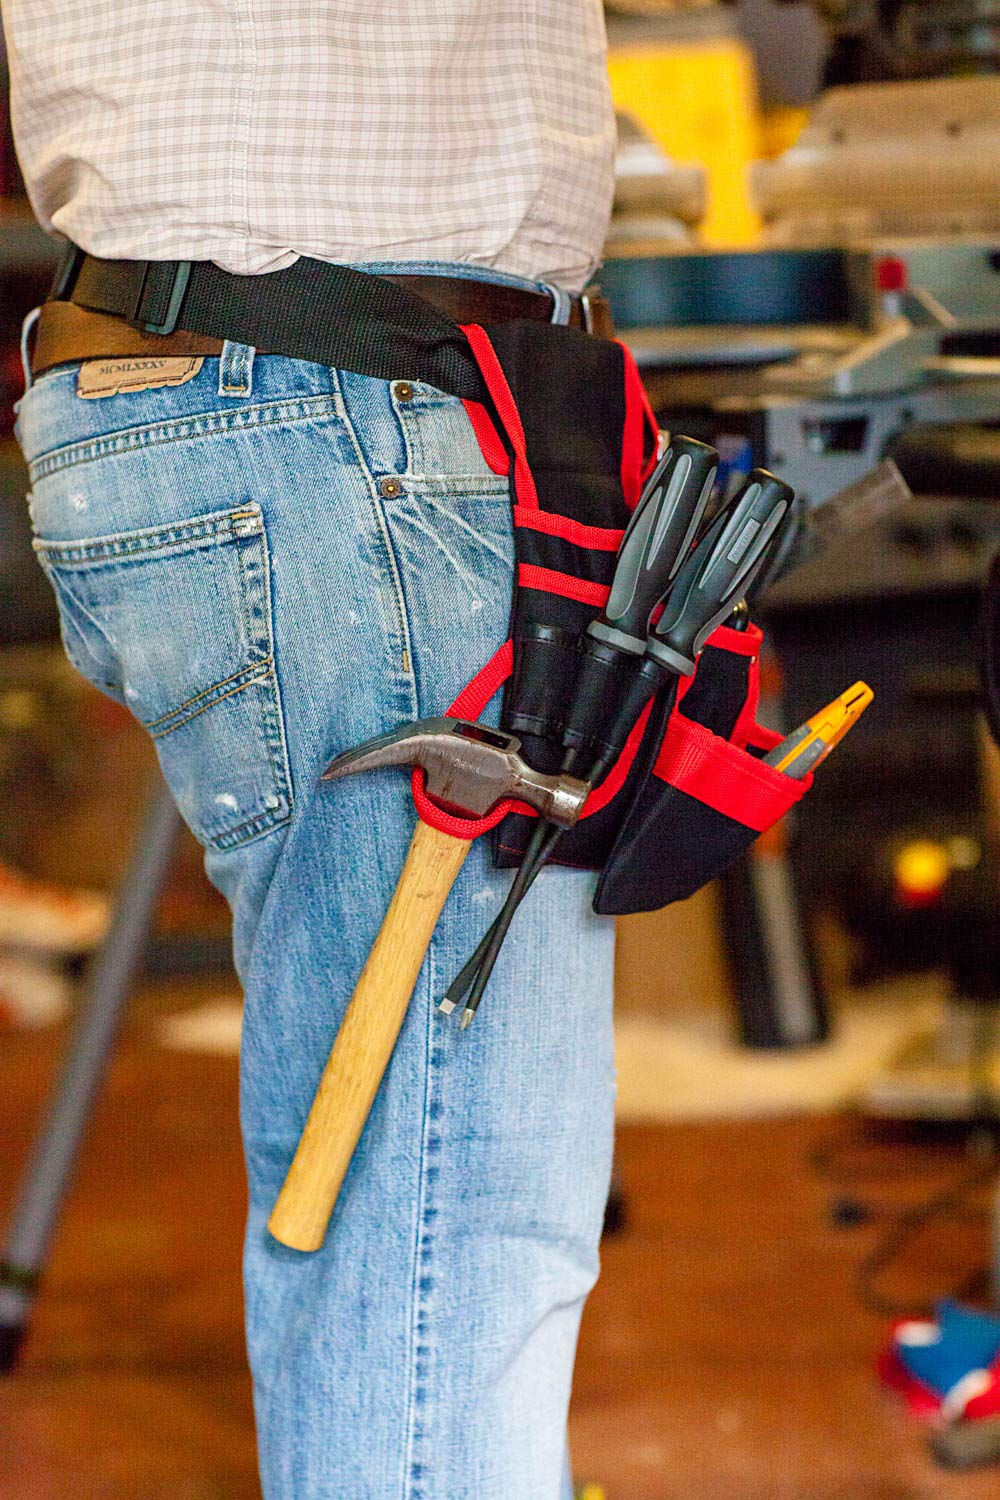 12 Pocket Leather Tool Belt Carpenter Construction 2 Hammer holder